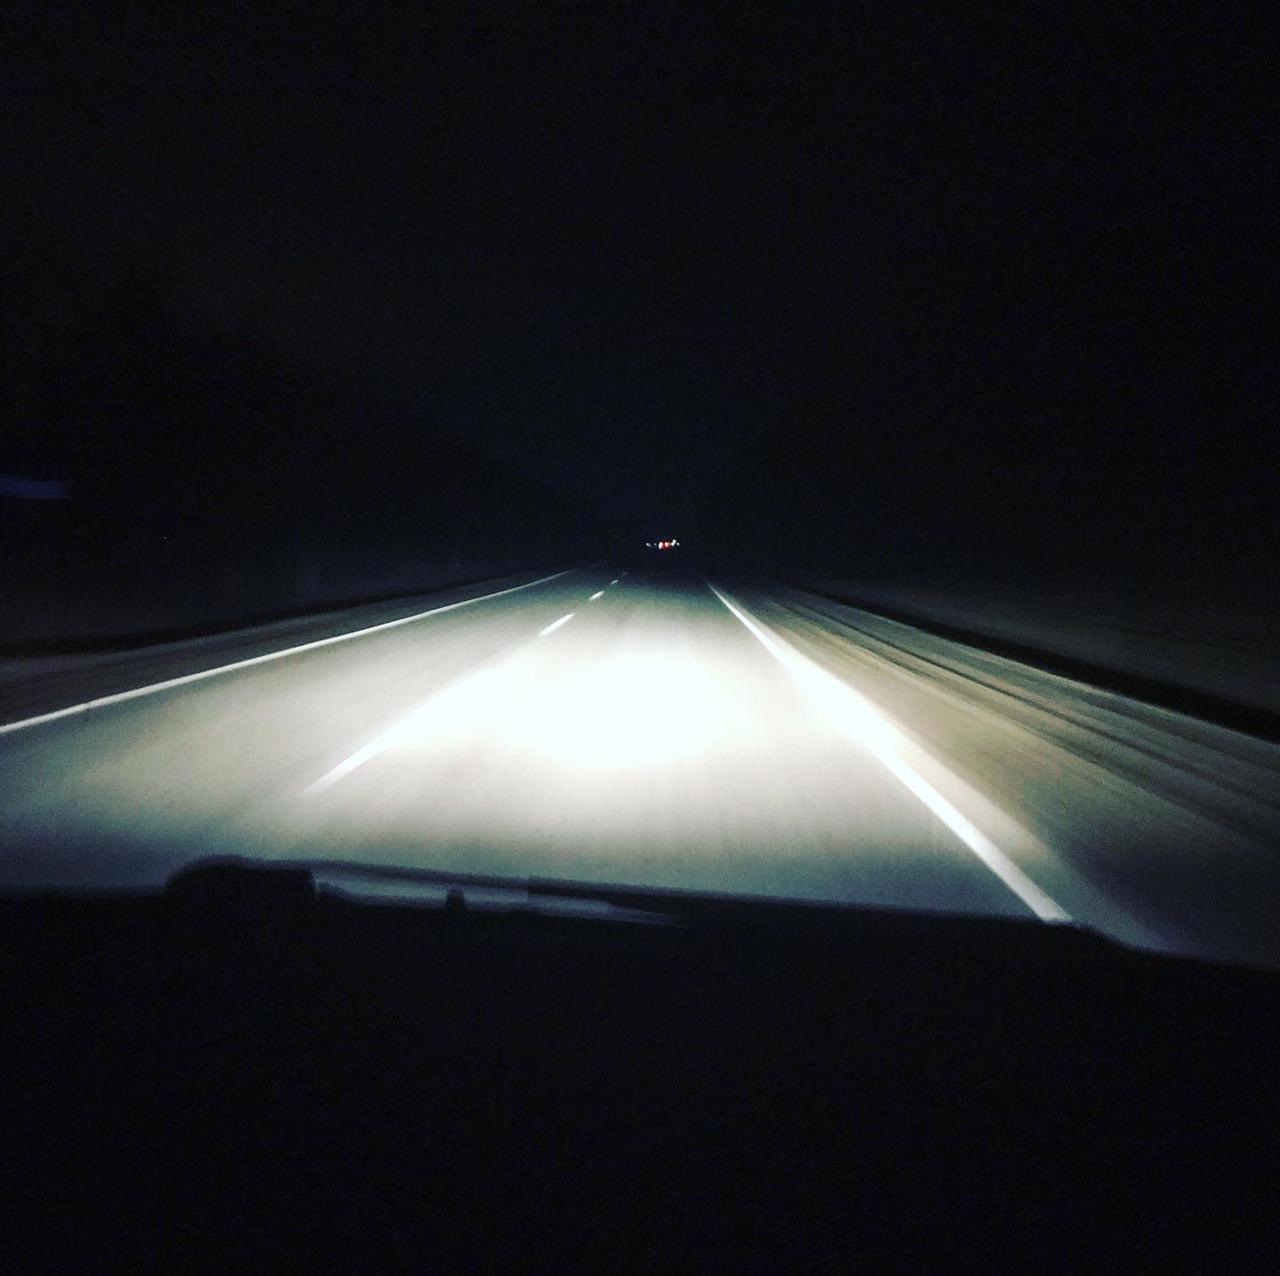 Света в машине год. Гмошьный свет на авто. Белый свет на машине. Мощный свет на авто границей линзы. Головной яркий свет автомобиля.